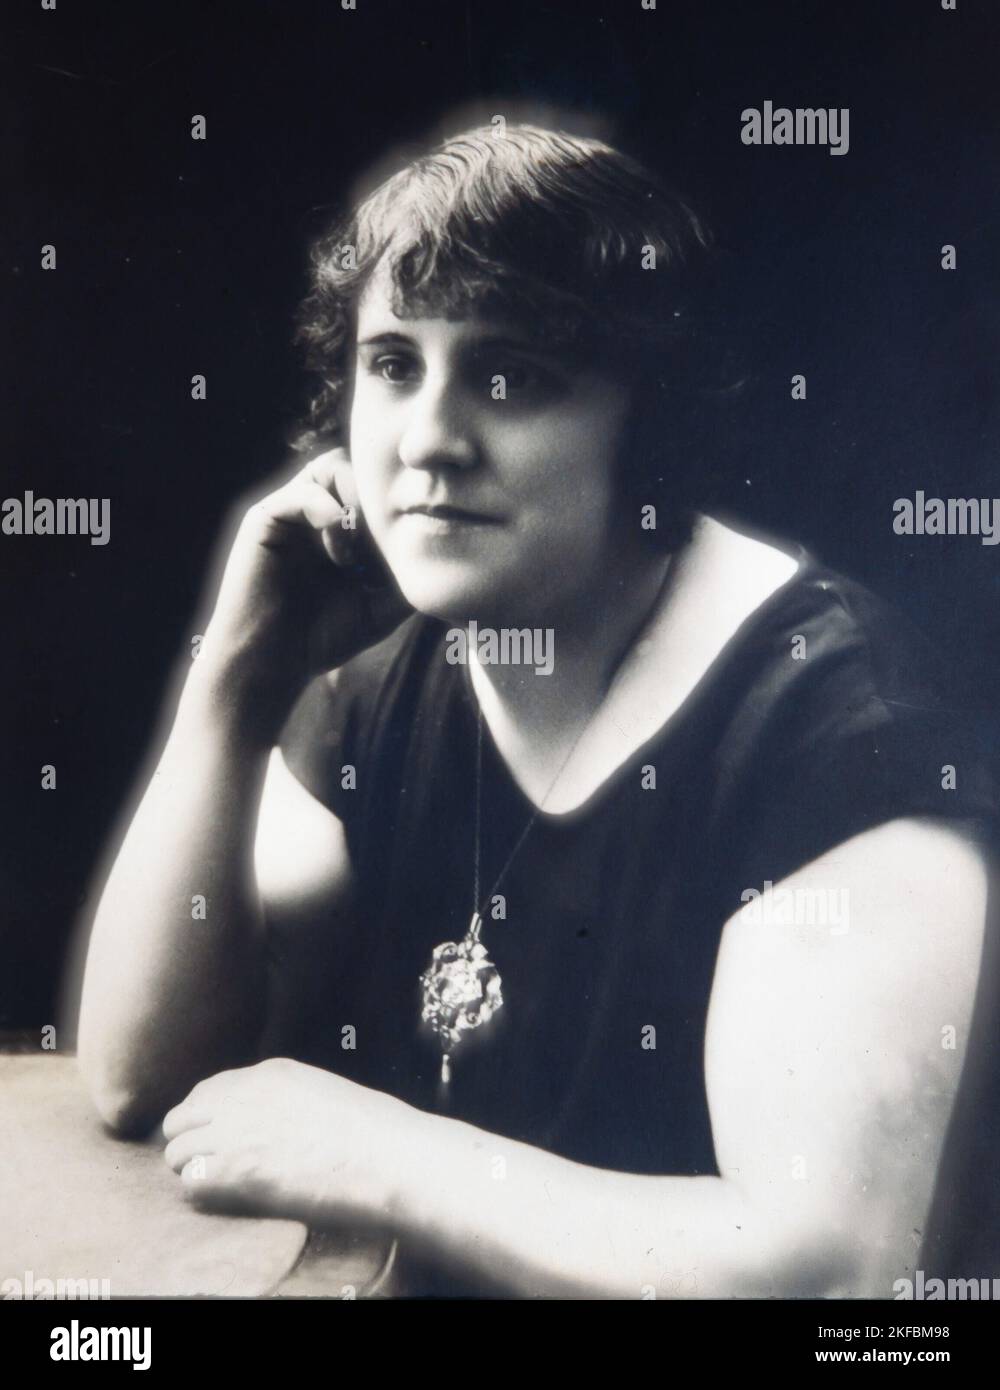 CLEMENTINA ARDERIU, (Barcelona, 6 de julio de 1889 - 17 de febrero de 1976) poetisa catalana. COLECCIÓN PRIVADA. Stockfoto